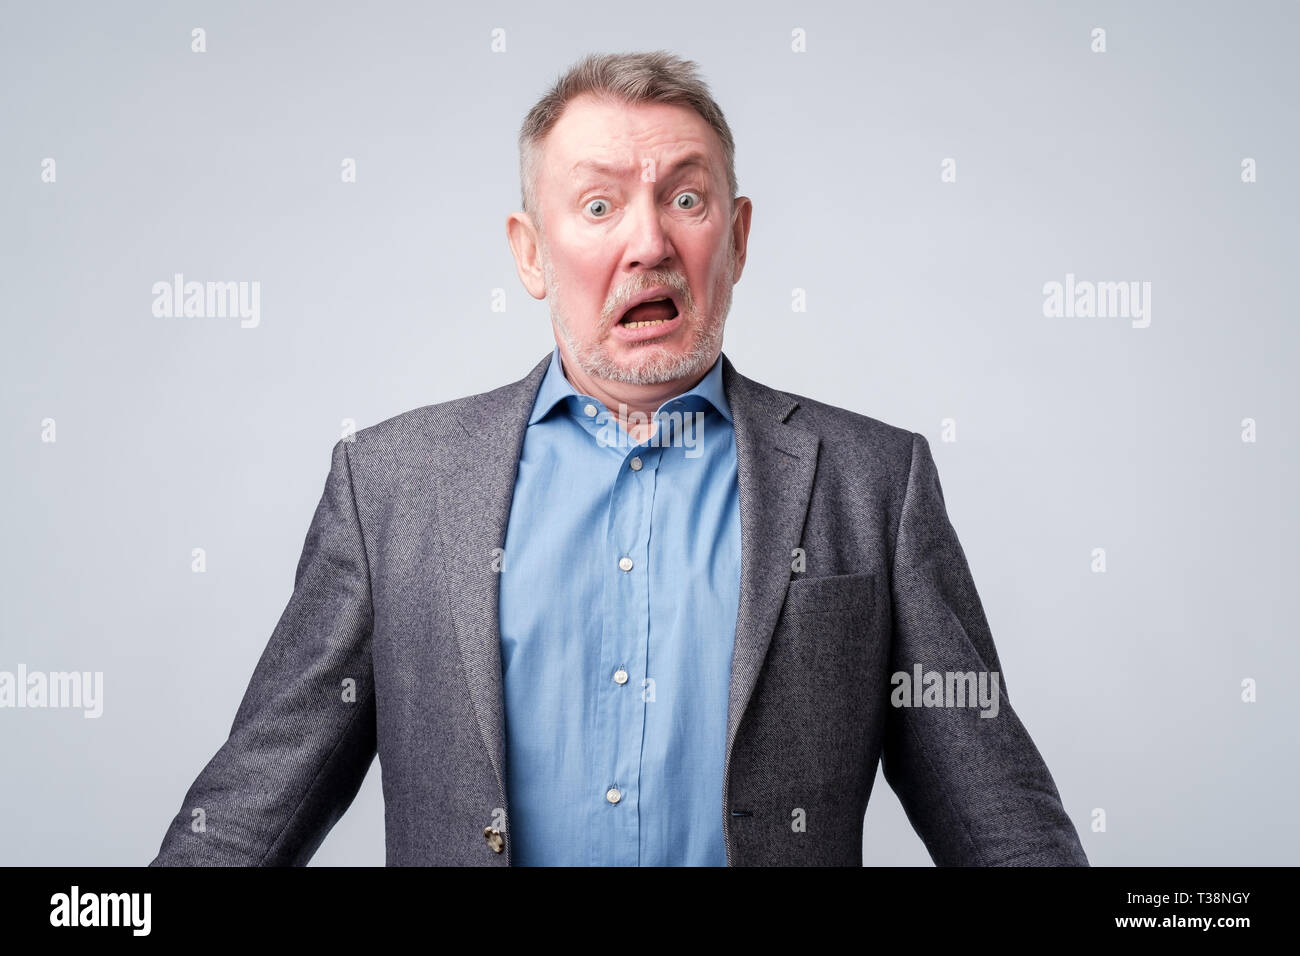 Schockiert und wow Gesicht des älteren europäischen Mann. Gesichtsbehandlung menschlichen Ausdrucks. Stockfoto